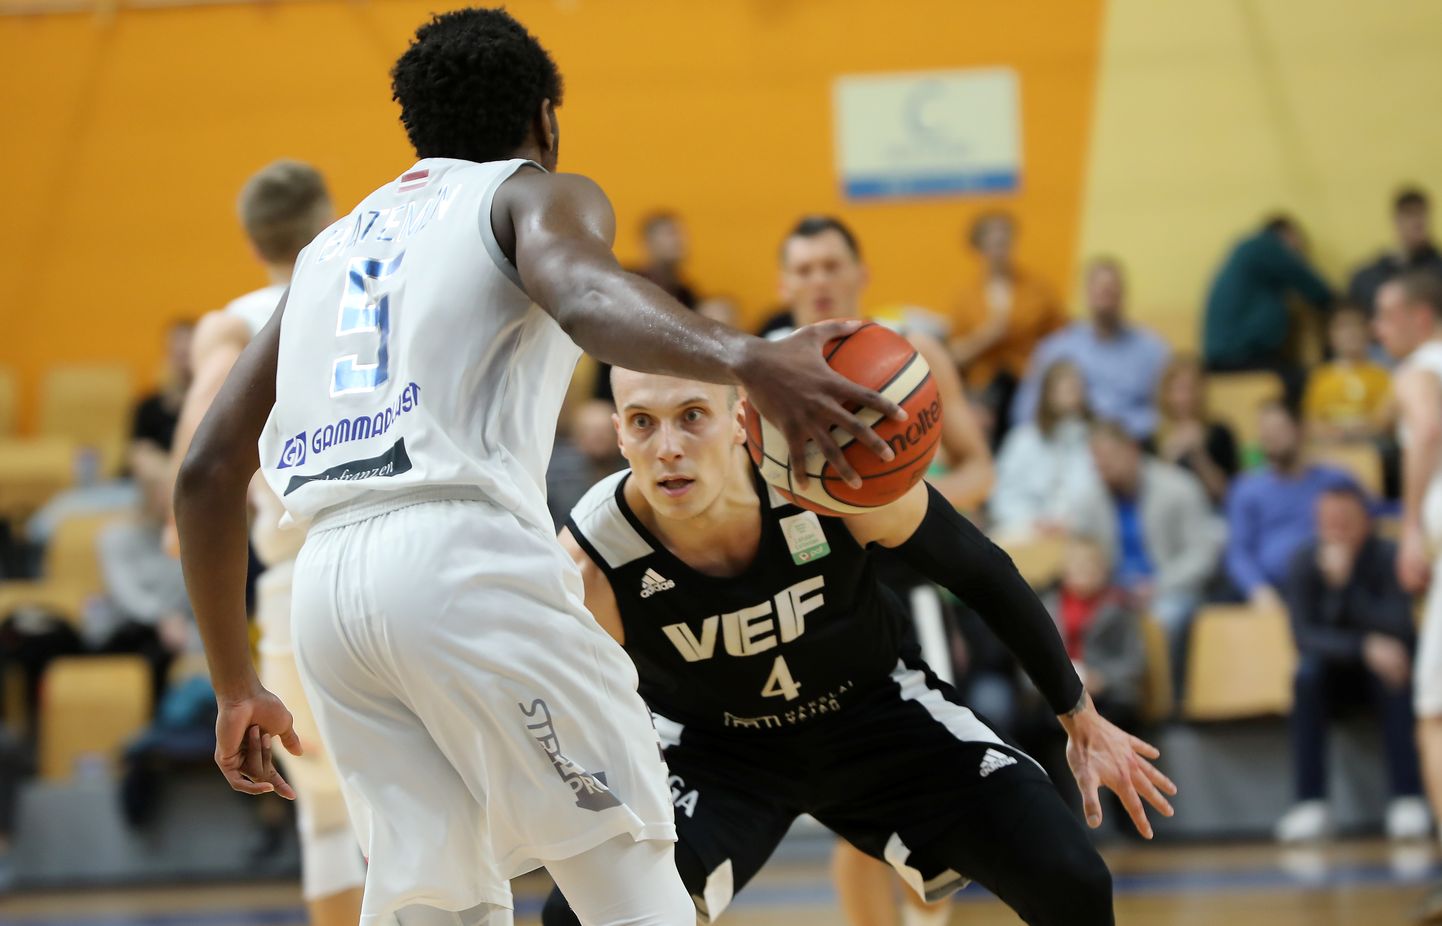 Latvijas-Igaunijas Basketbola līgas spēle, kurā tiekas "VEF Rīga" un "Ogre" basketbola komandas